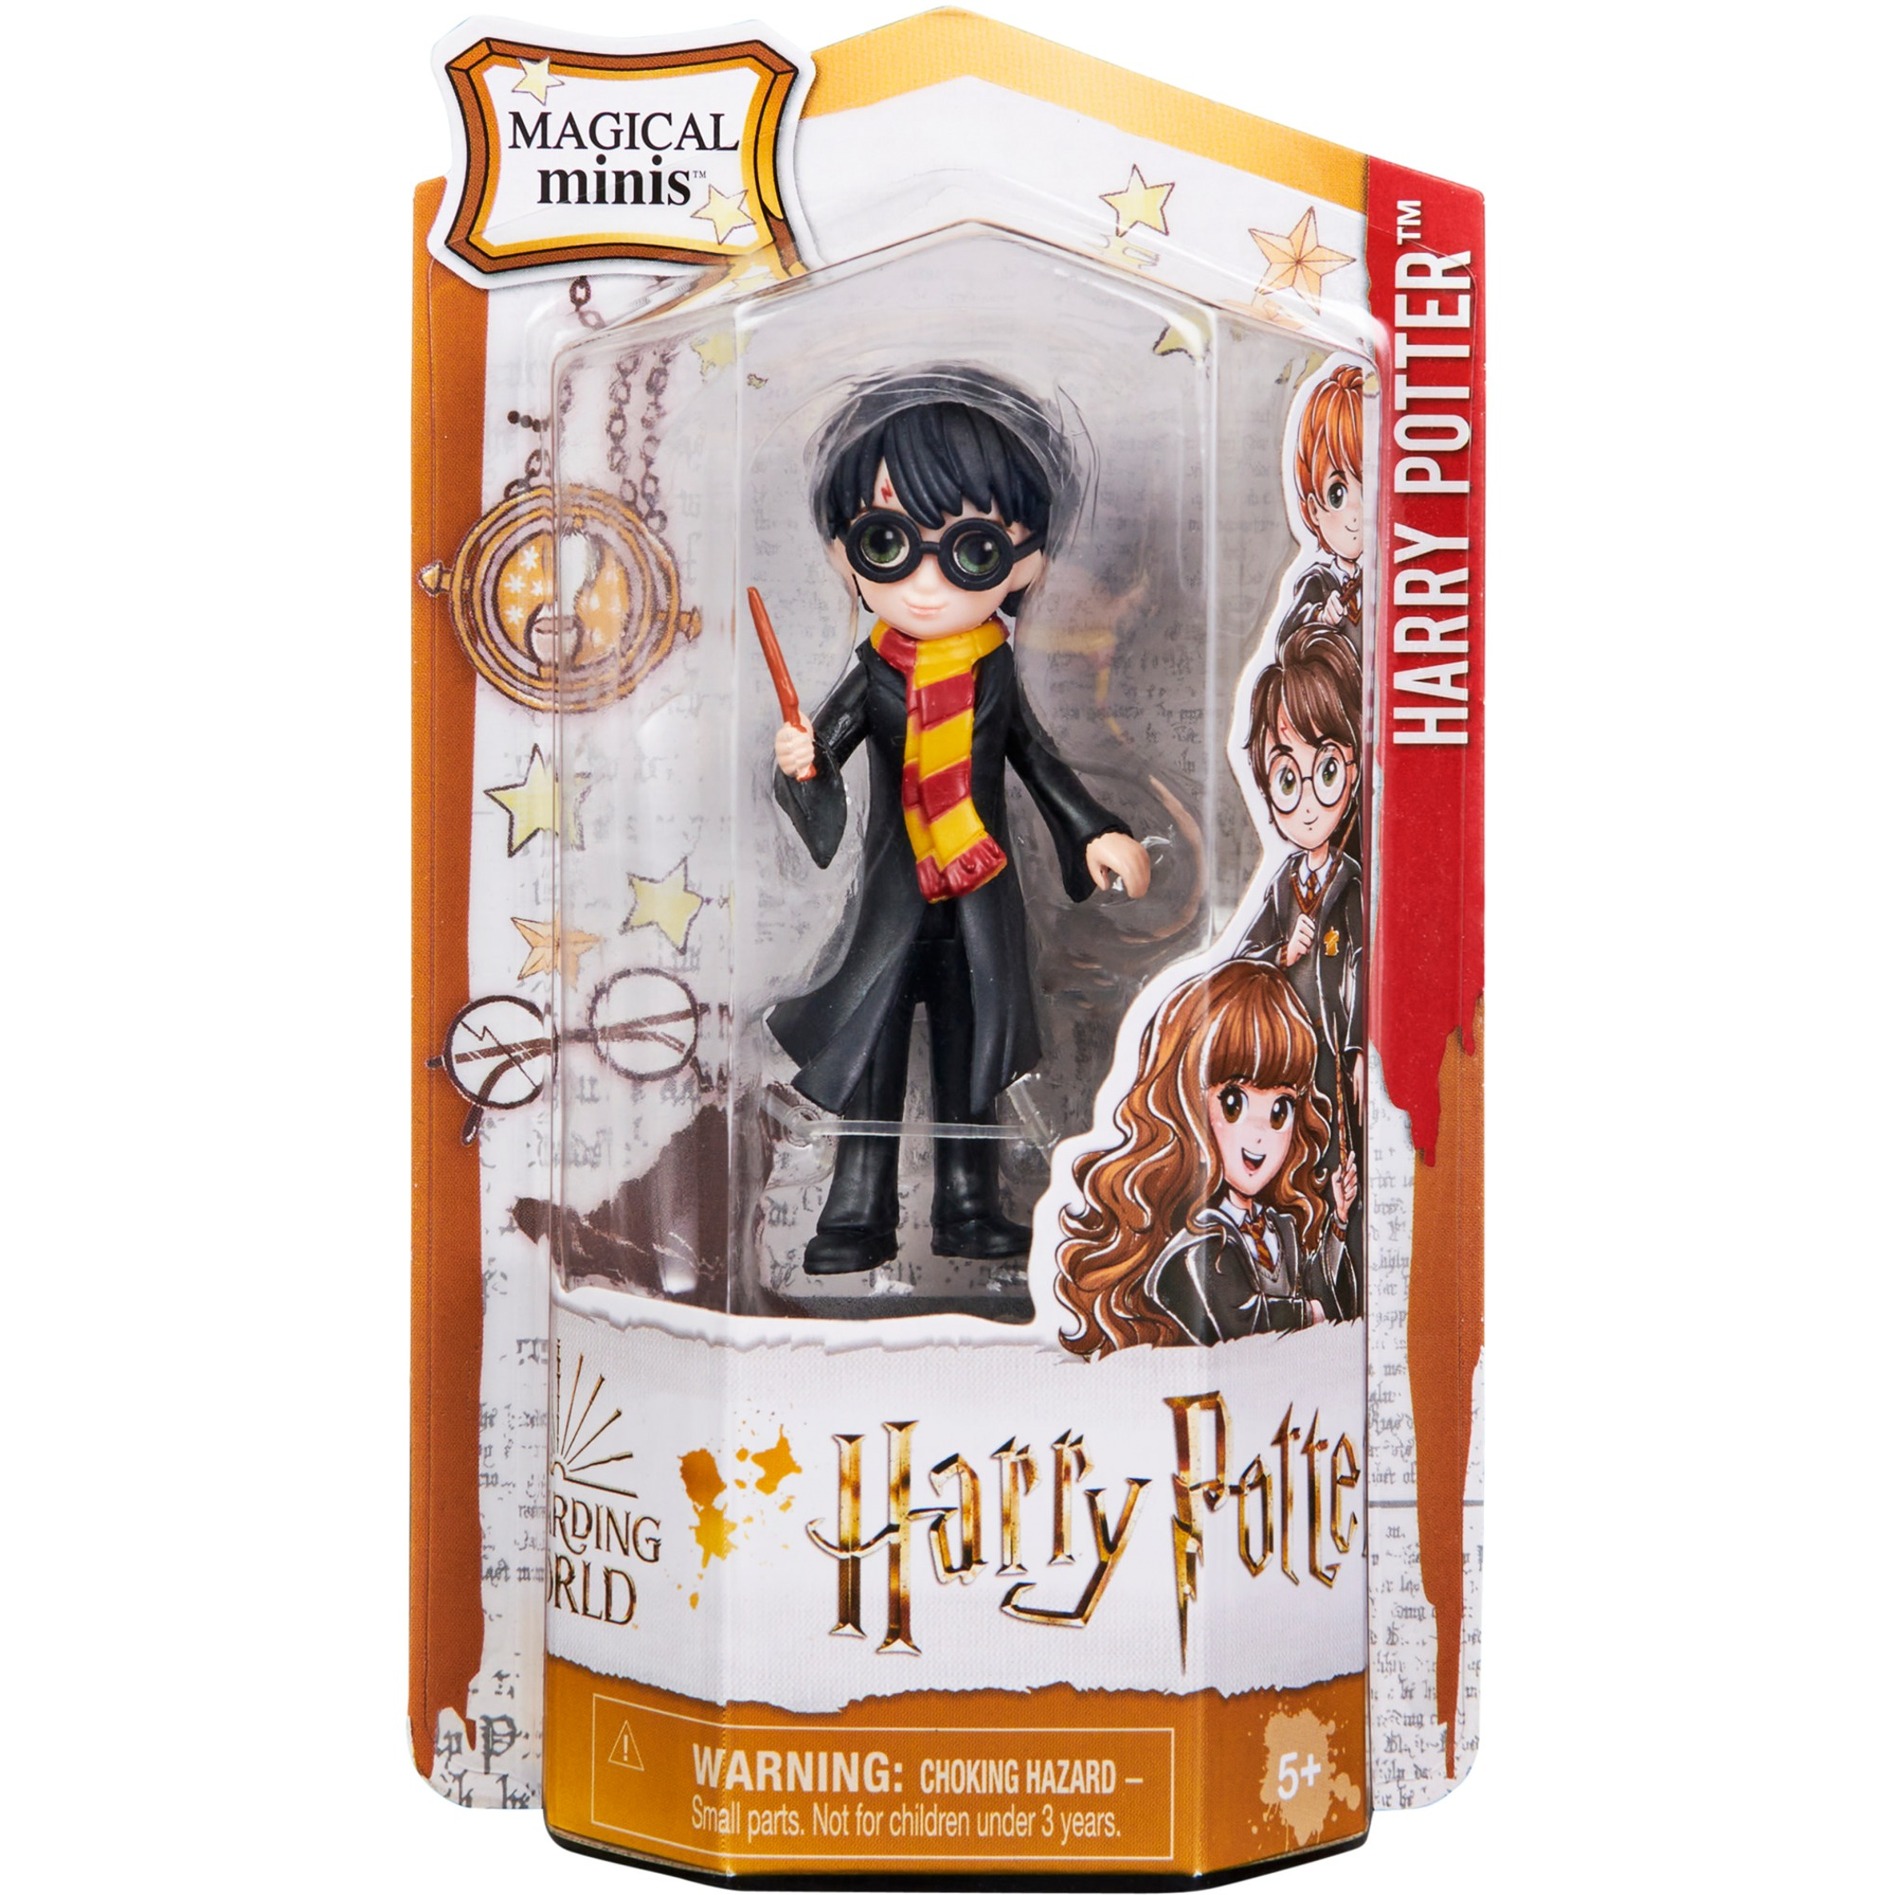 Image of Alternate - Wizarding World Harry Potter - Magical Minis Harry Potter Sammelfigur 7,6 cm, Spielfigur online einkaufen bei Alternate